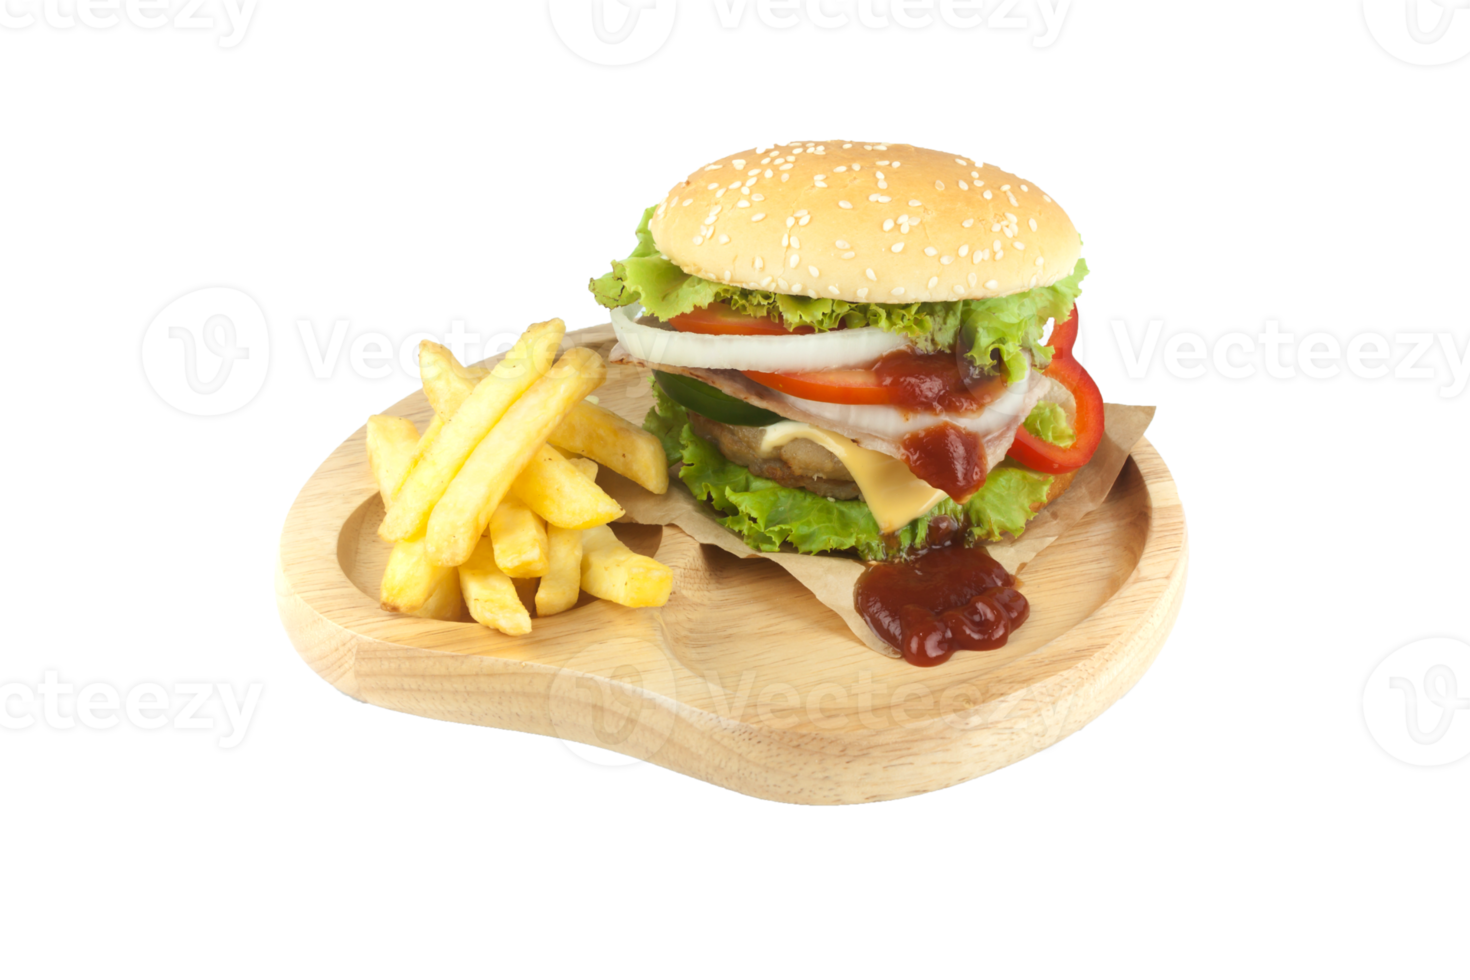 hamburger di maiale fatto in casa con pancetta grigliata contiene verdure, formaggio, lattuga, cipolla, peperoncino, spezie in un piatto di legno isolato su sfondo bianco png